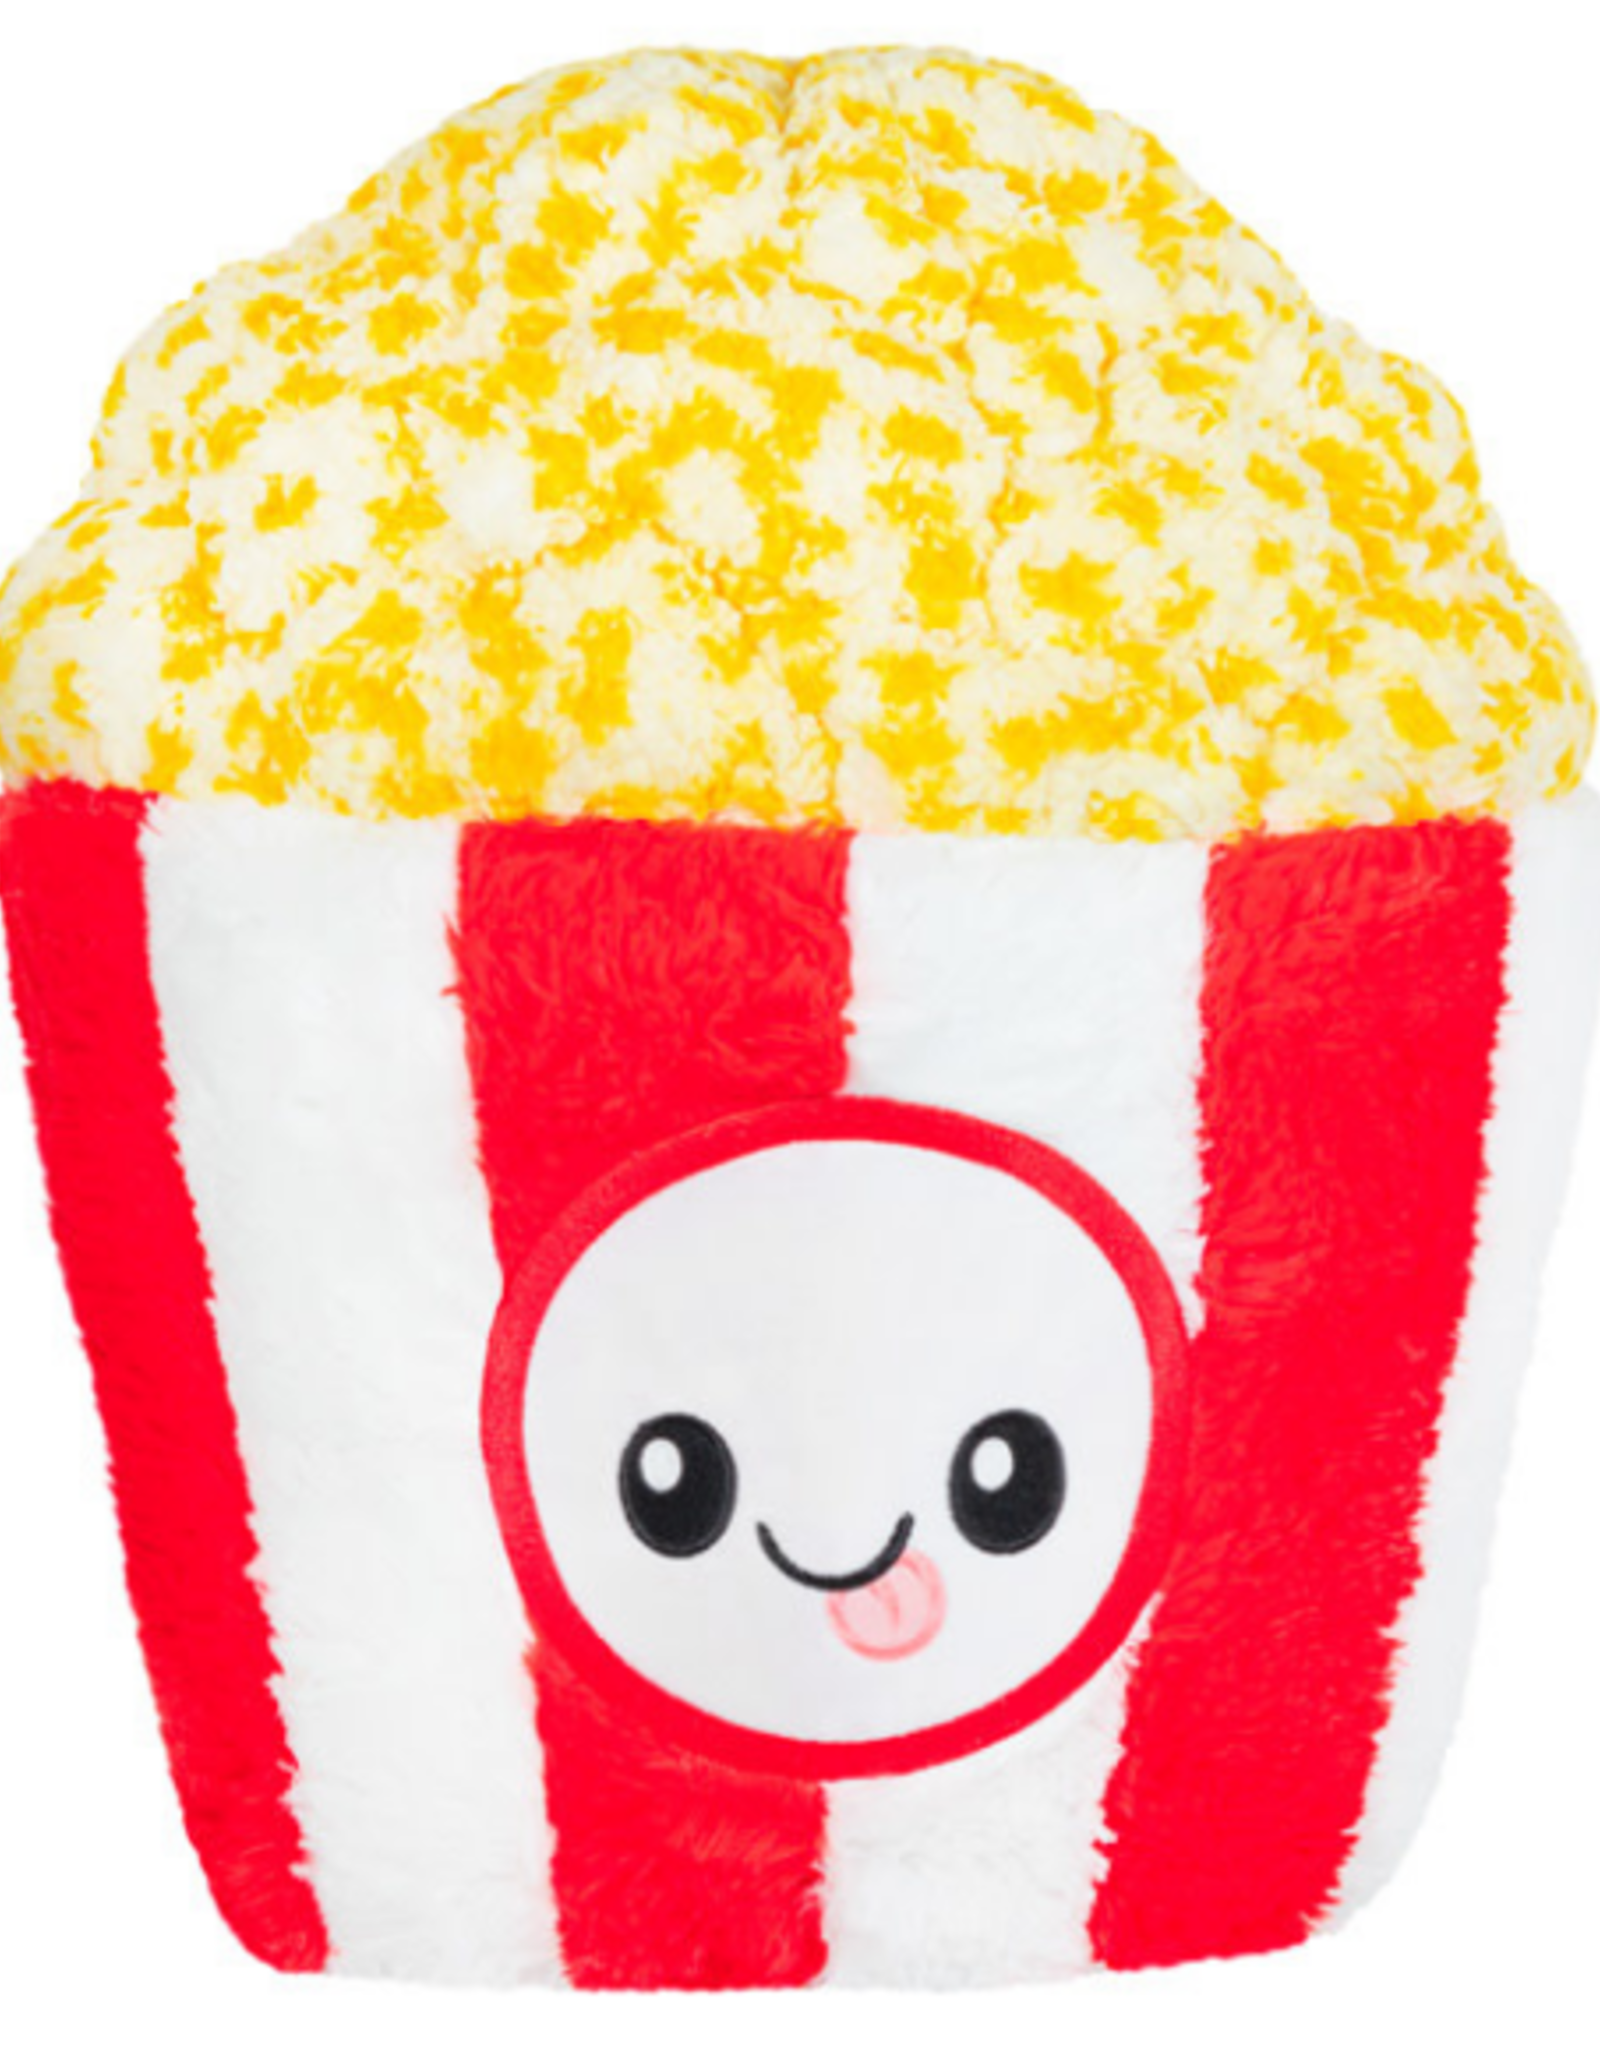 Squishable Snugglemi Snackers Popcorn 5"